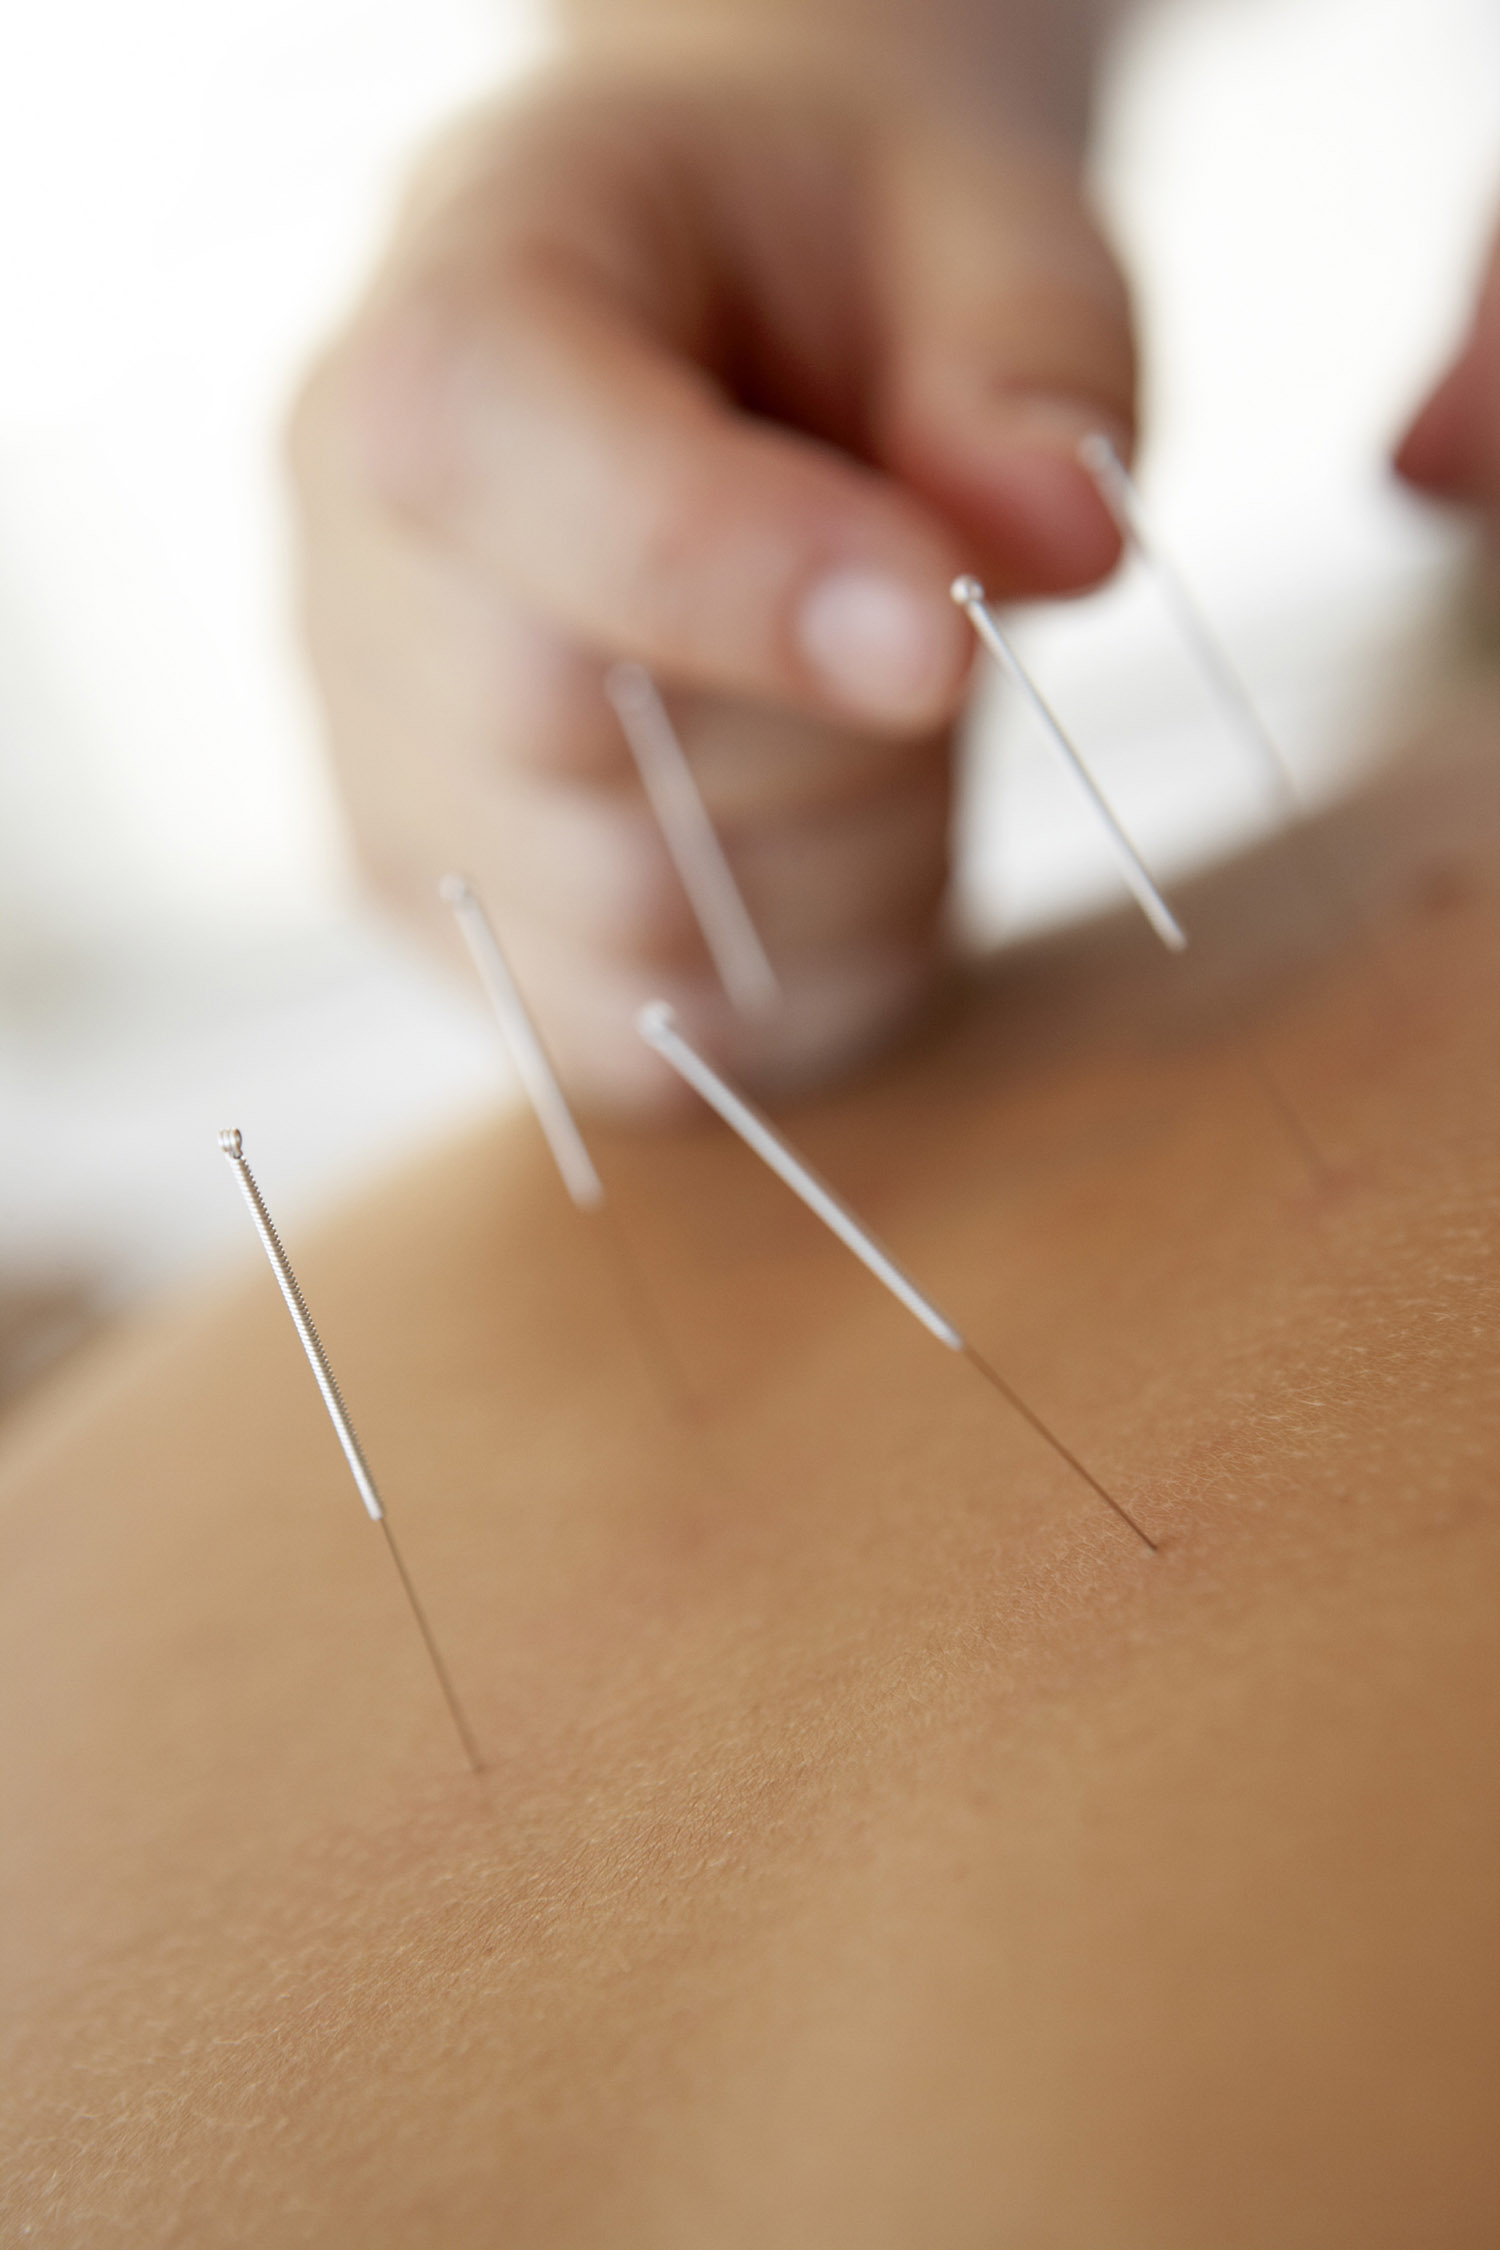 Acupuncture treatment winnipeg